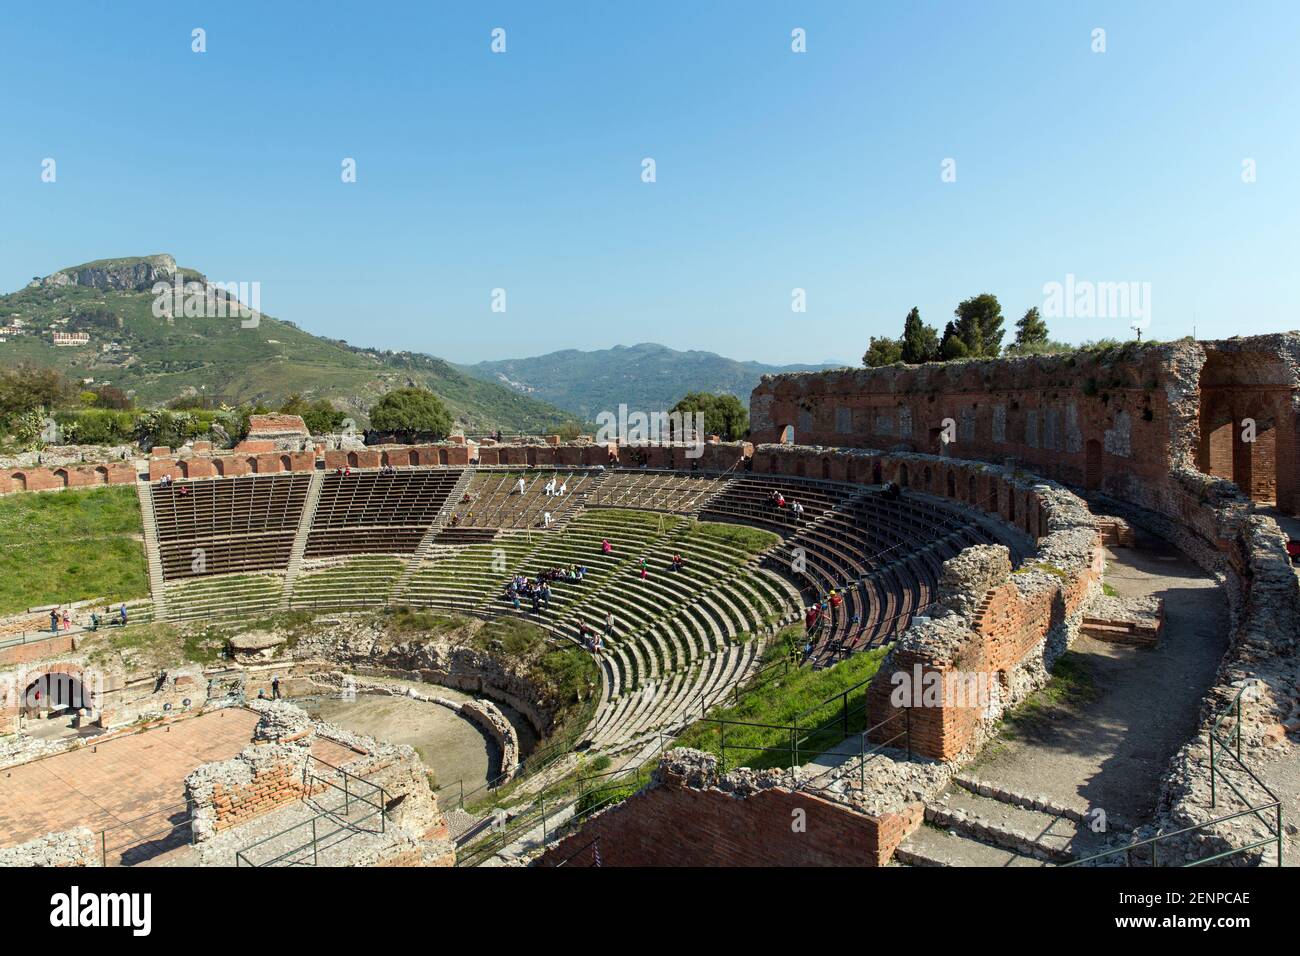 Italia, Sicilia, Taormina, il Teatro Greco, con un diametro di 120 metri (390 piedi) questo teatro è il secondo più grande del suo genere in Sicilia Foto Stock